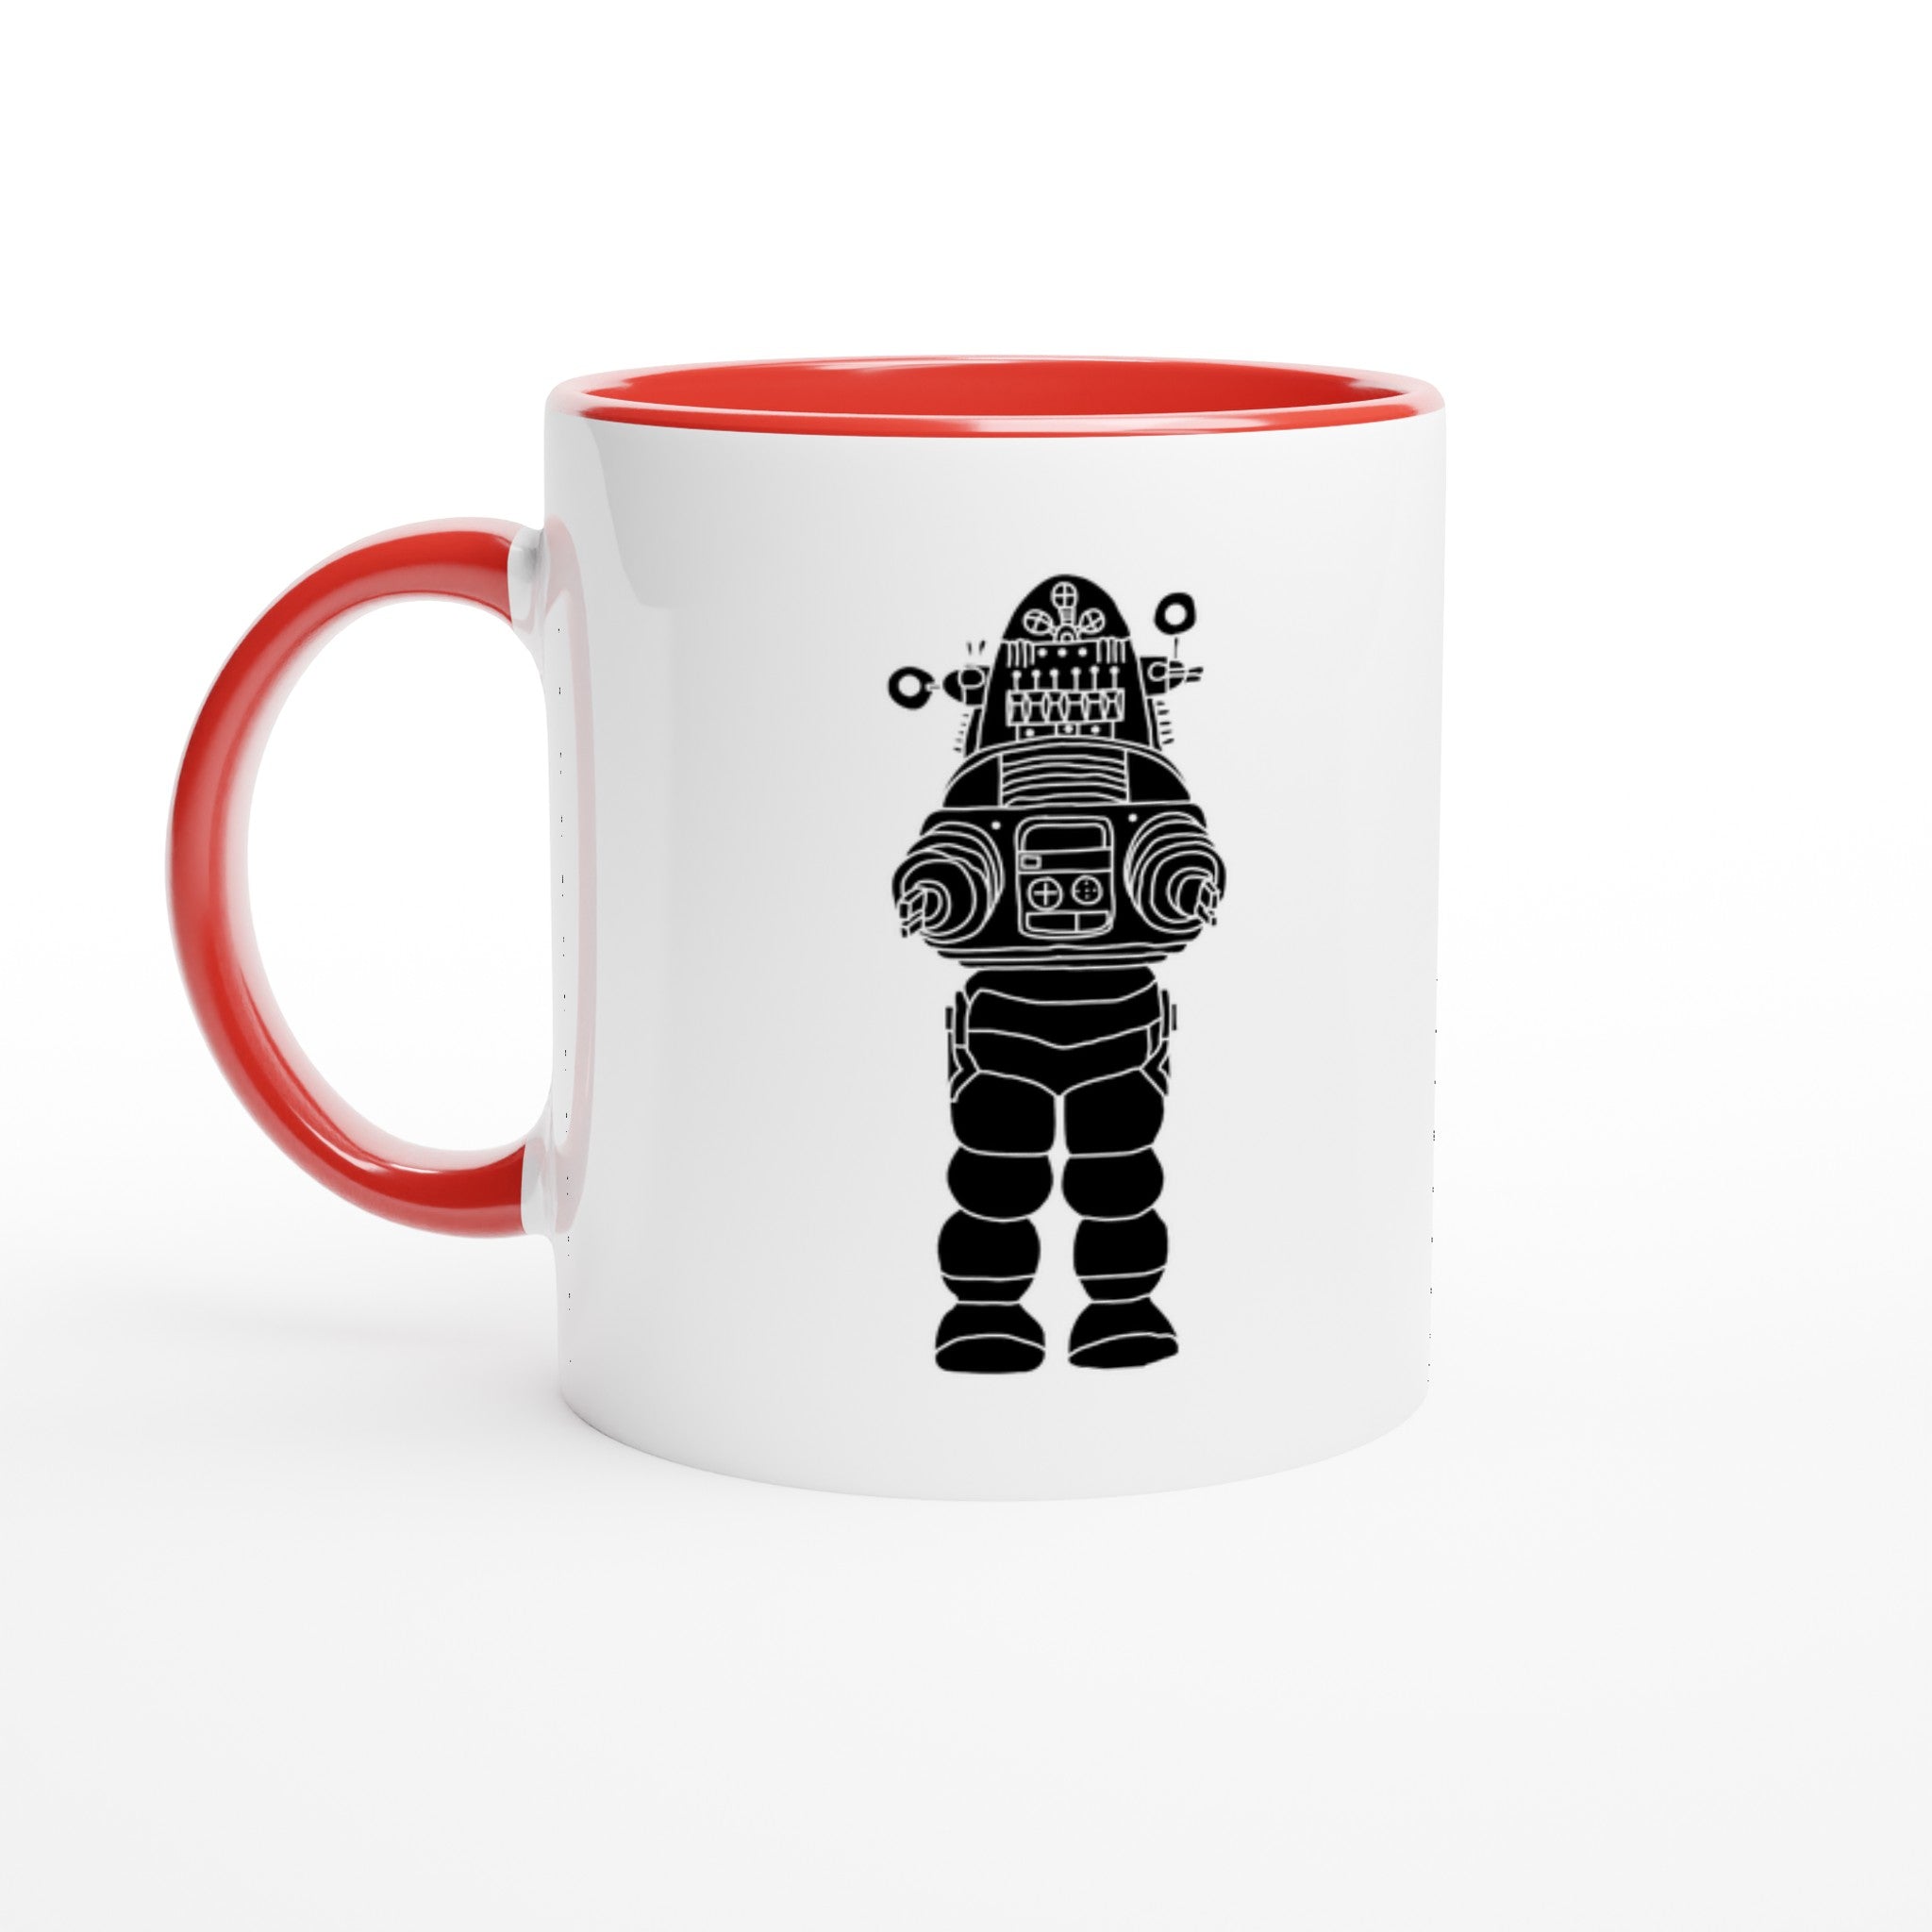 ROBOT UPRISING Mug - Optimalprint